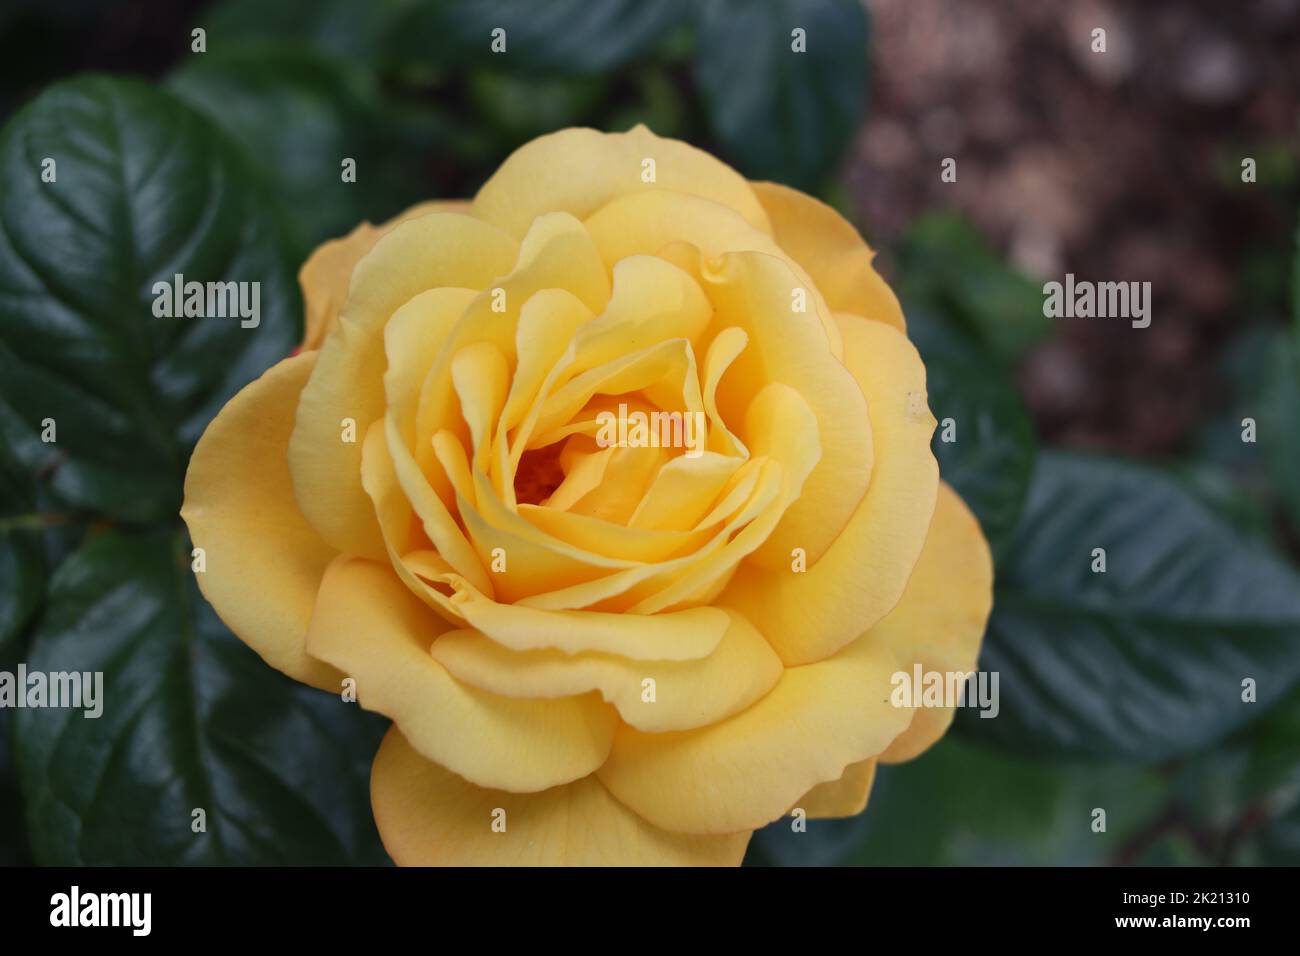 Closeup of a Yellow Rose Stock Photo